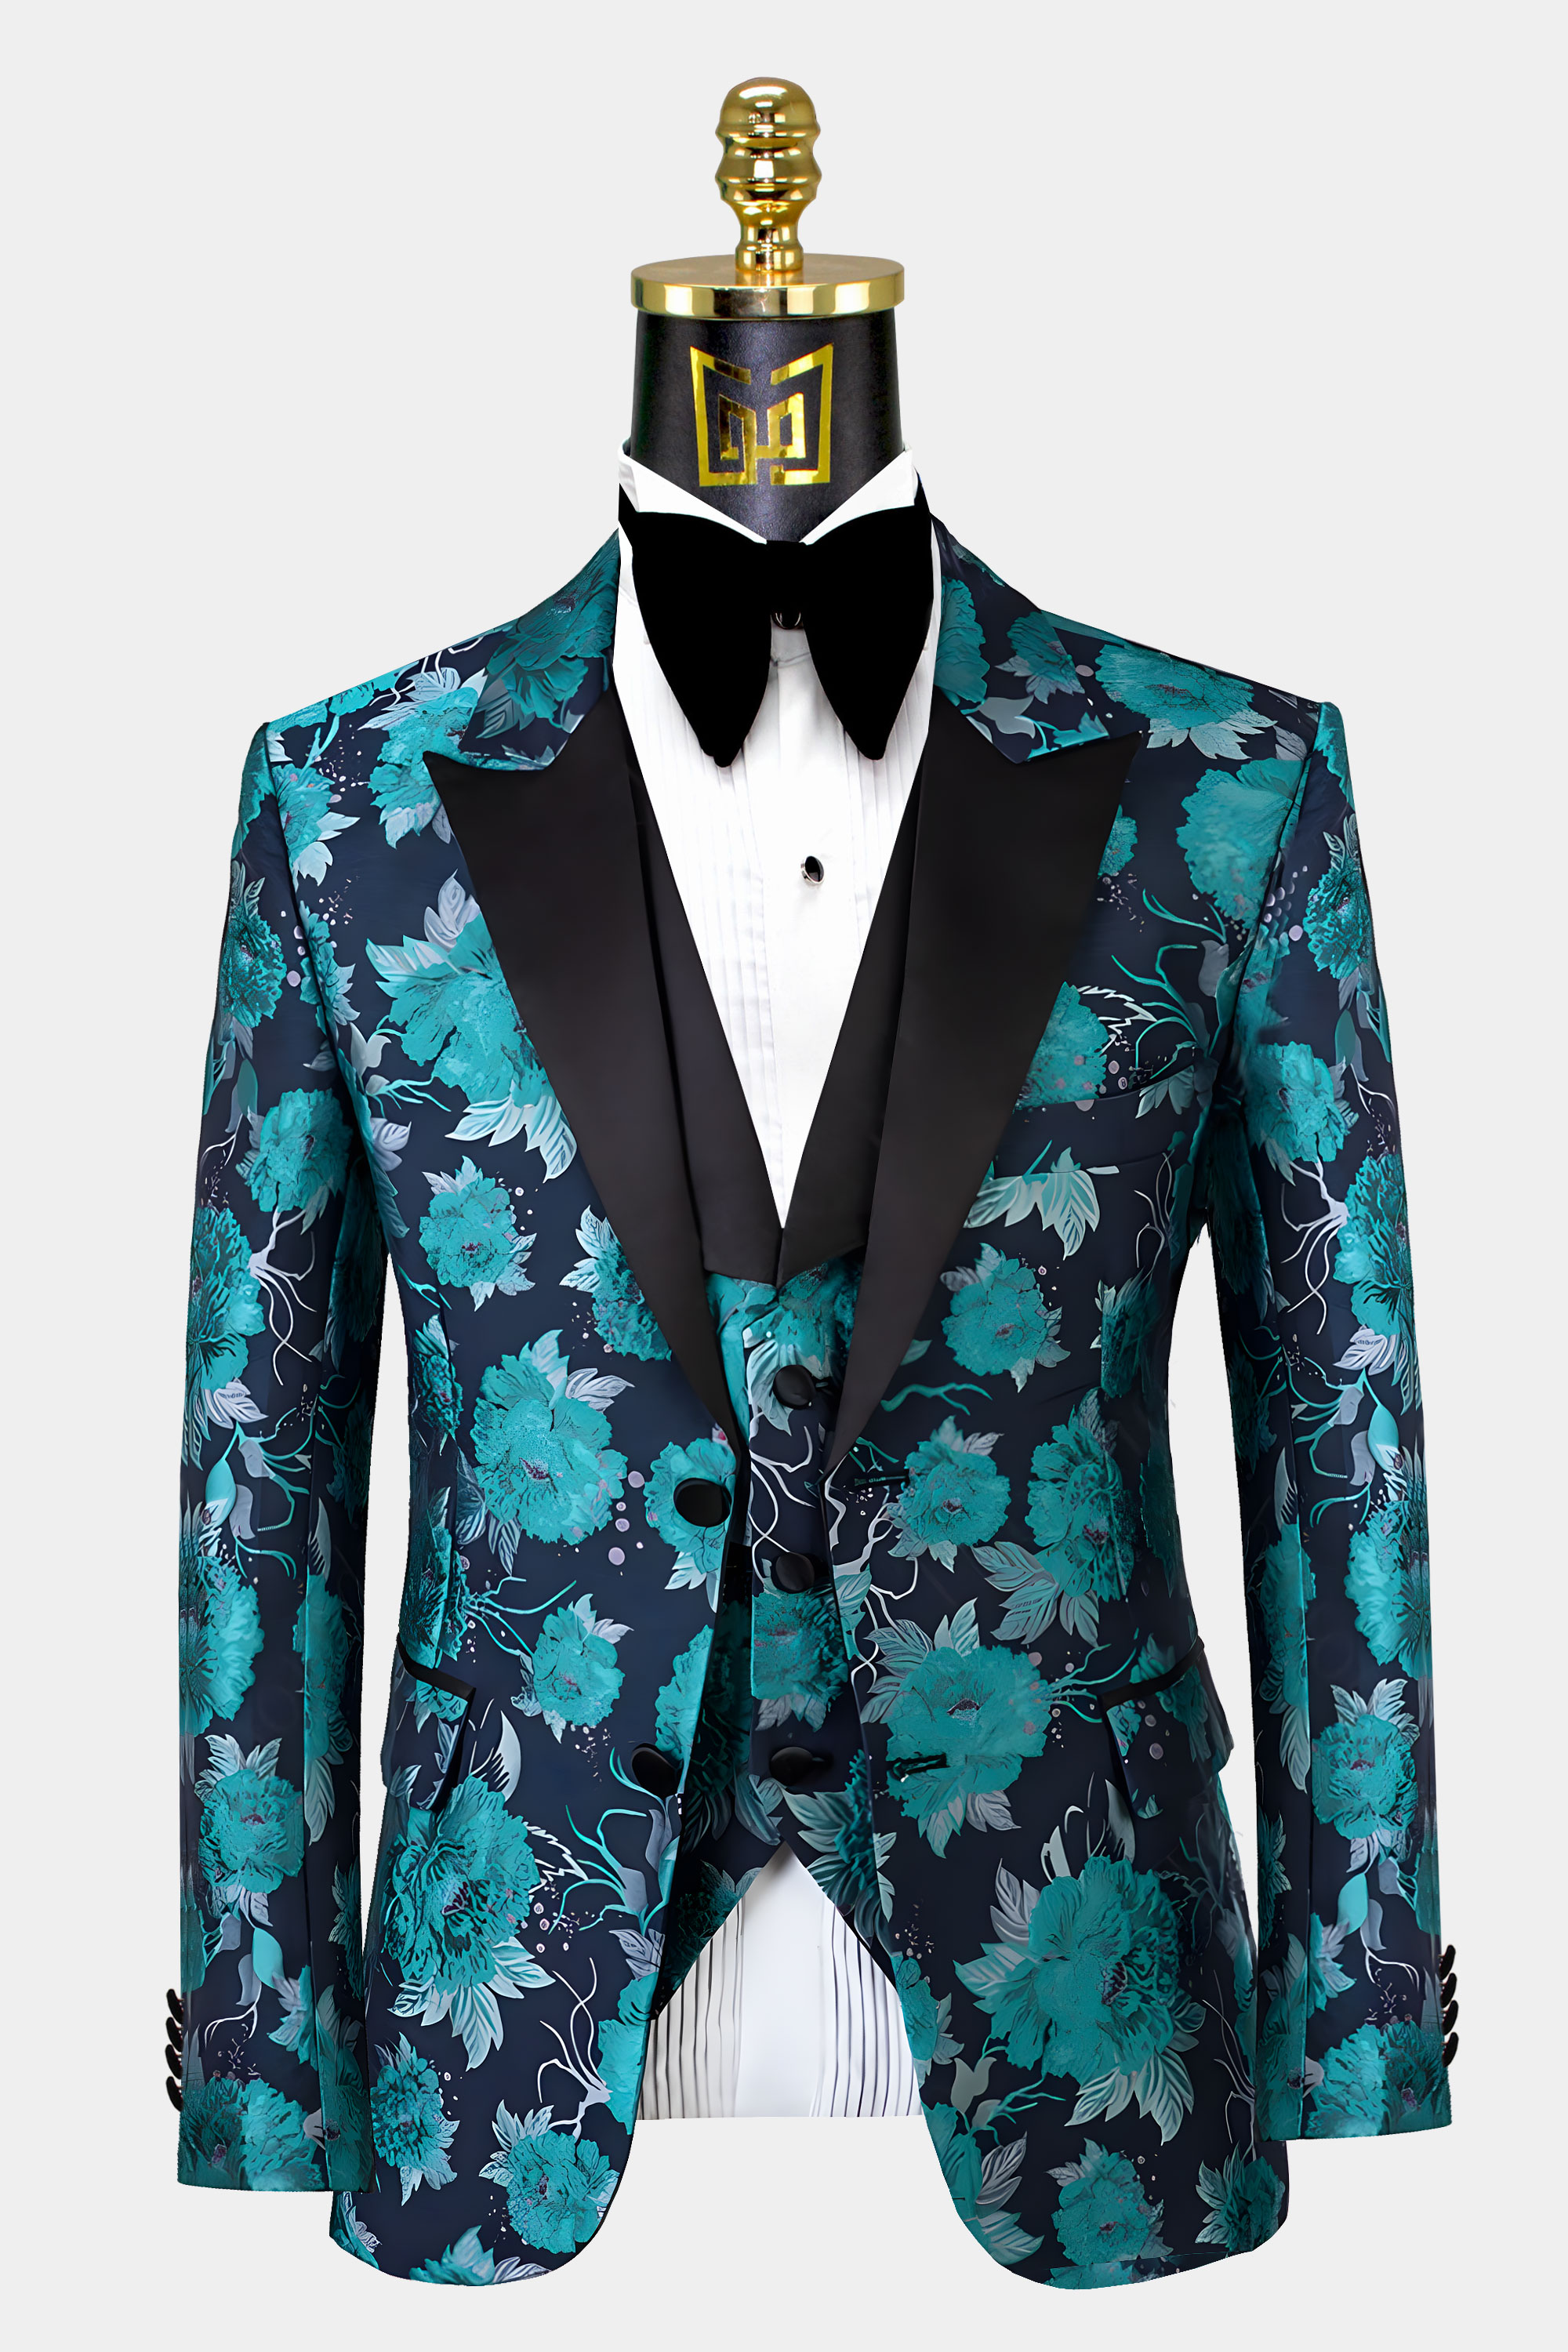 Mens-Turquoise-FTuxedo-Jacket-from-Gentlemansguru.com